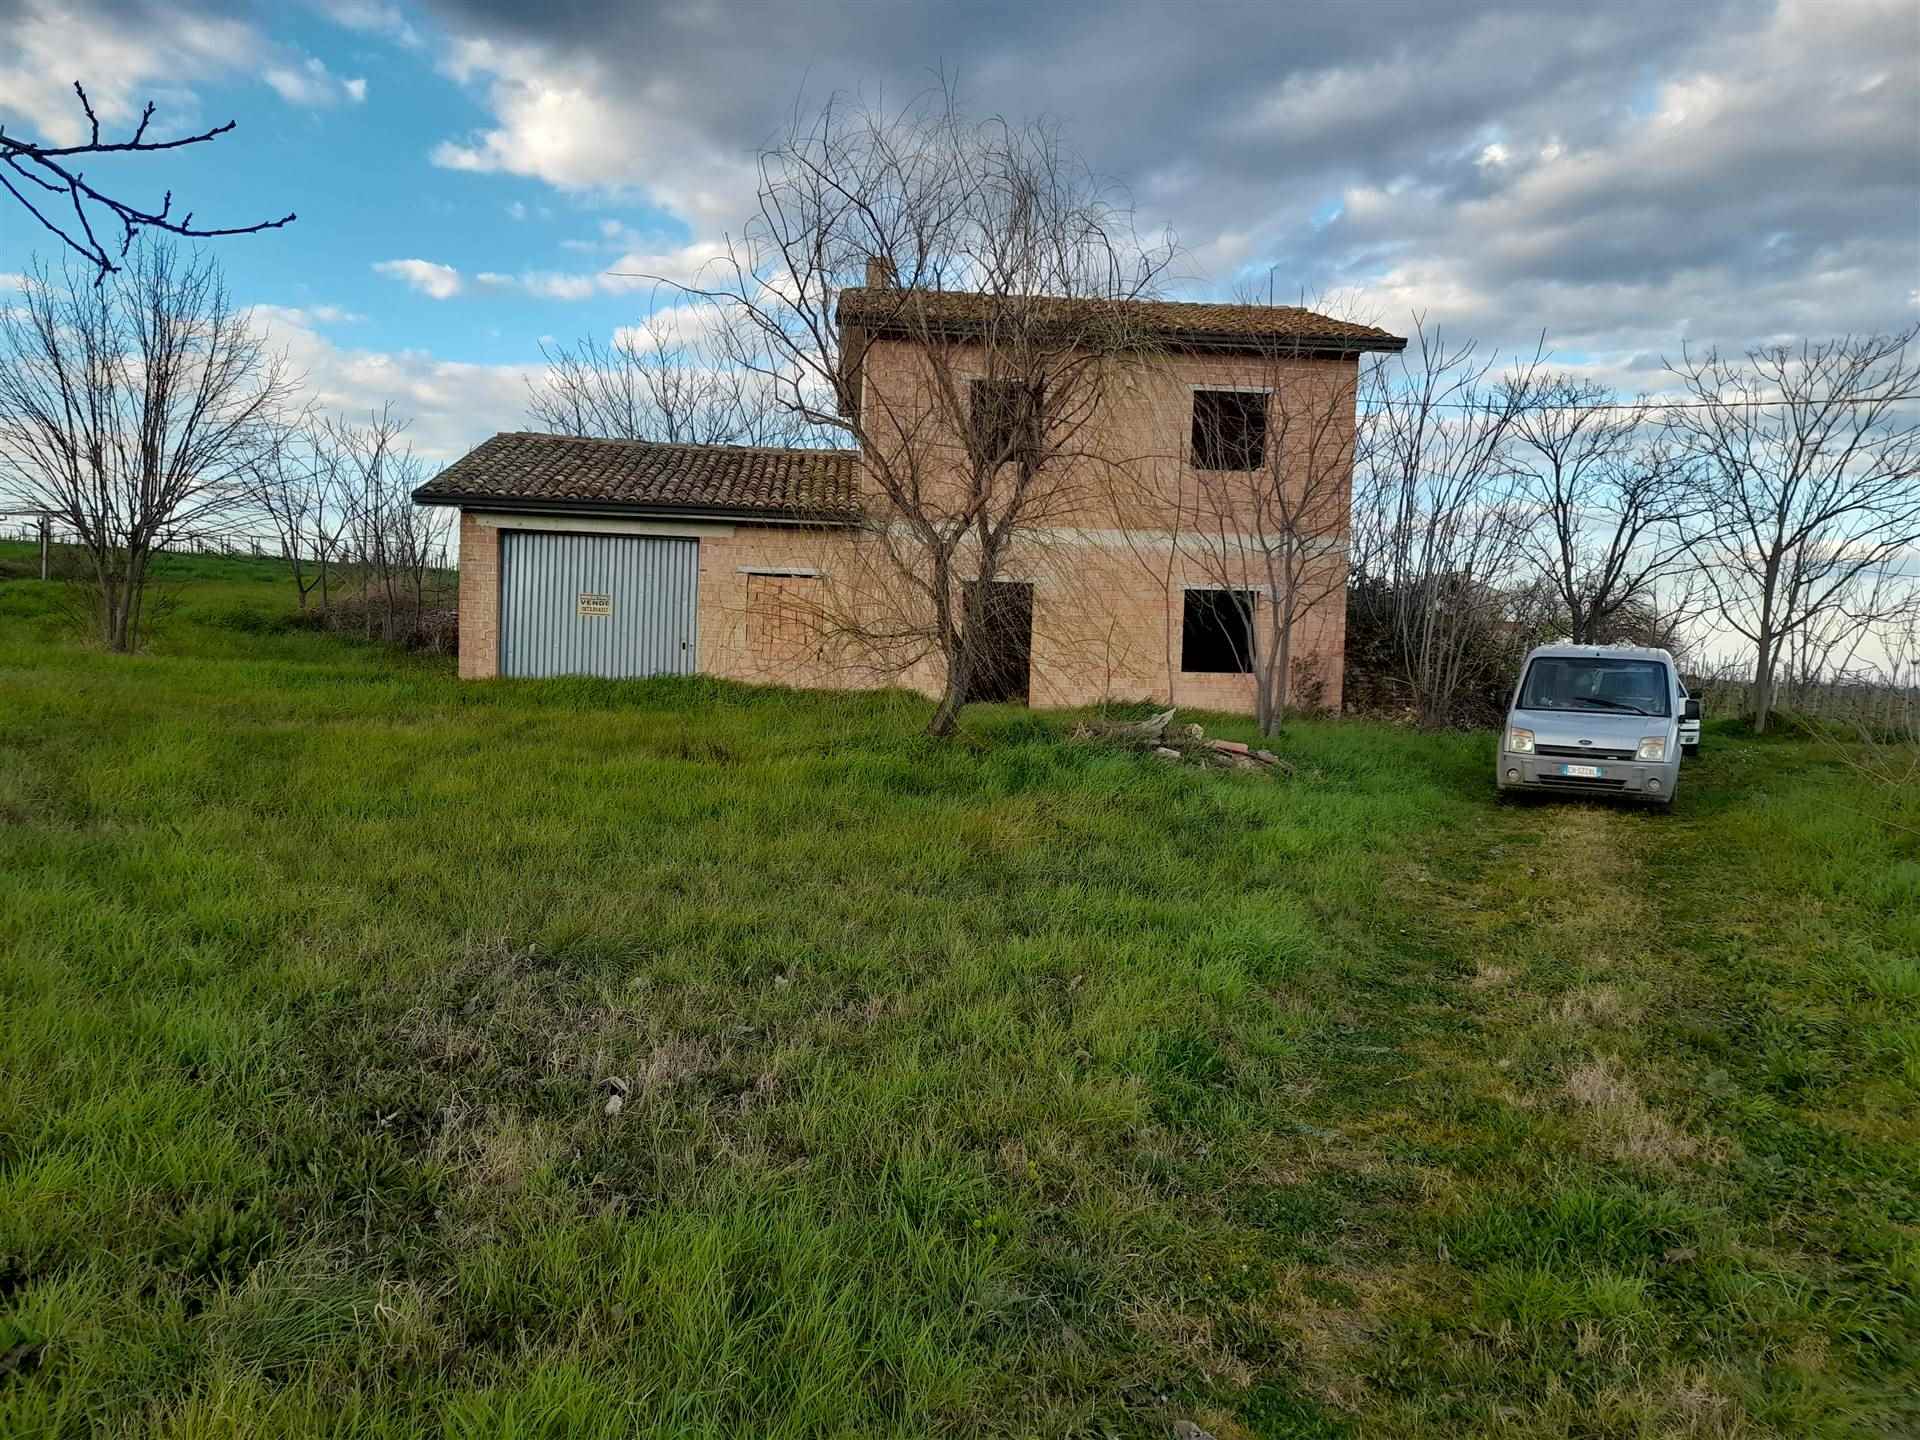 V 870 L'agenzia immobiliare Aliservice propone in vendita a Scerni, in contrada Villa Ragna, un casolare grezzo di mq. 90 circa con garage di mq. 35 